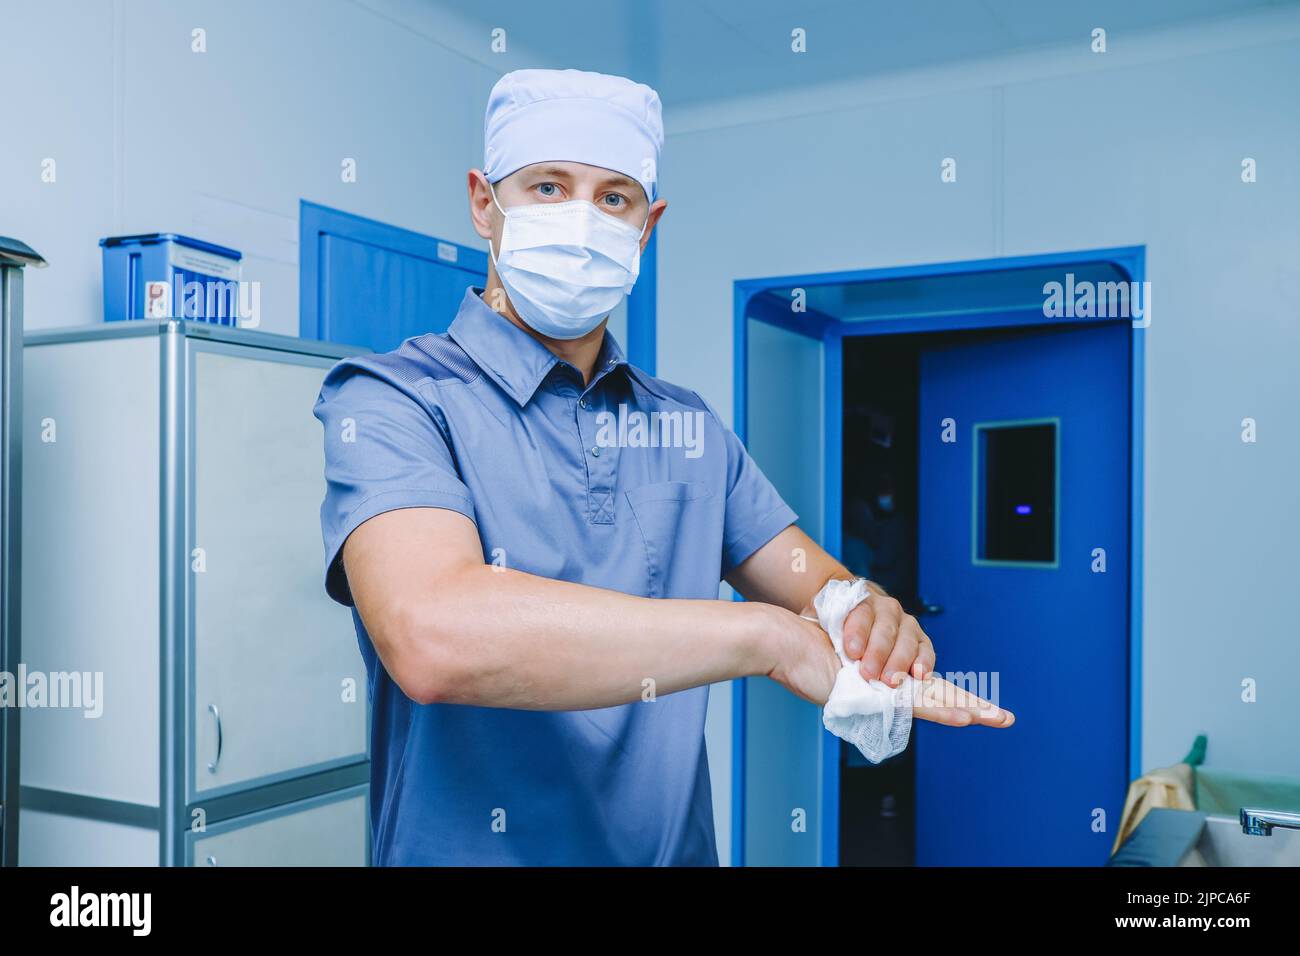 Un chirurgo maschio disinfetta le mani prima dell'intervento chirurgico. Un medico in una maschera chirurgica e uniforme strofinare le mani con un panno antisettico. Disinfezione delle mani prima dell'intervento chirurgico. Foto Stock